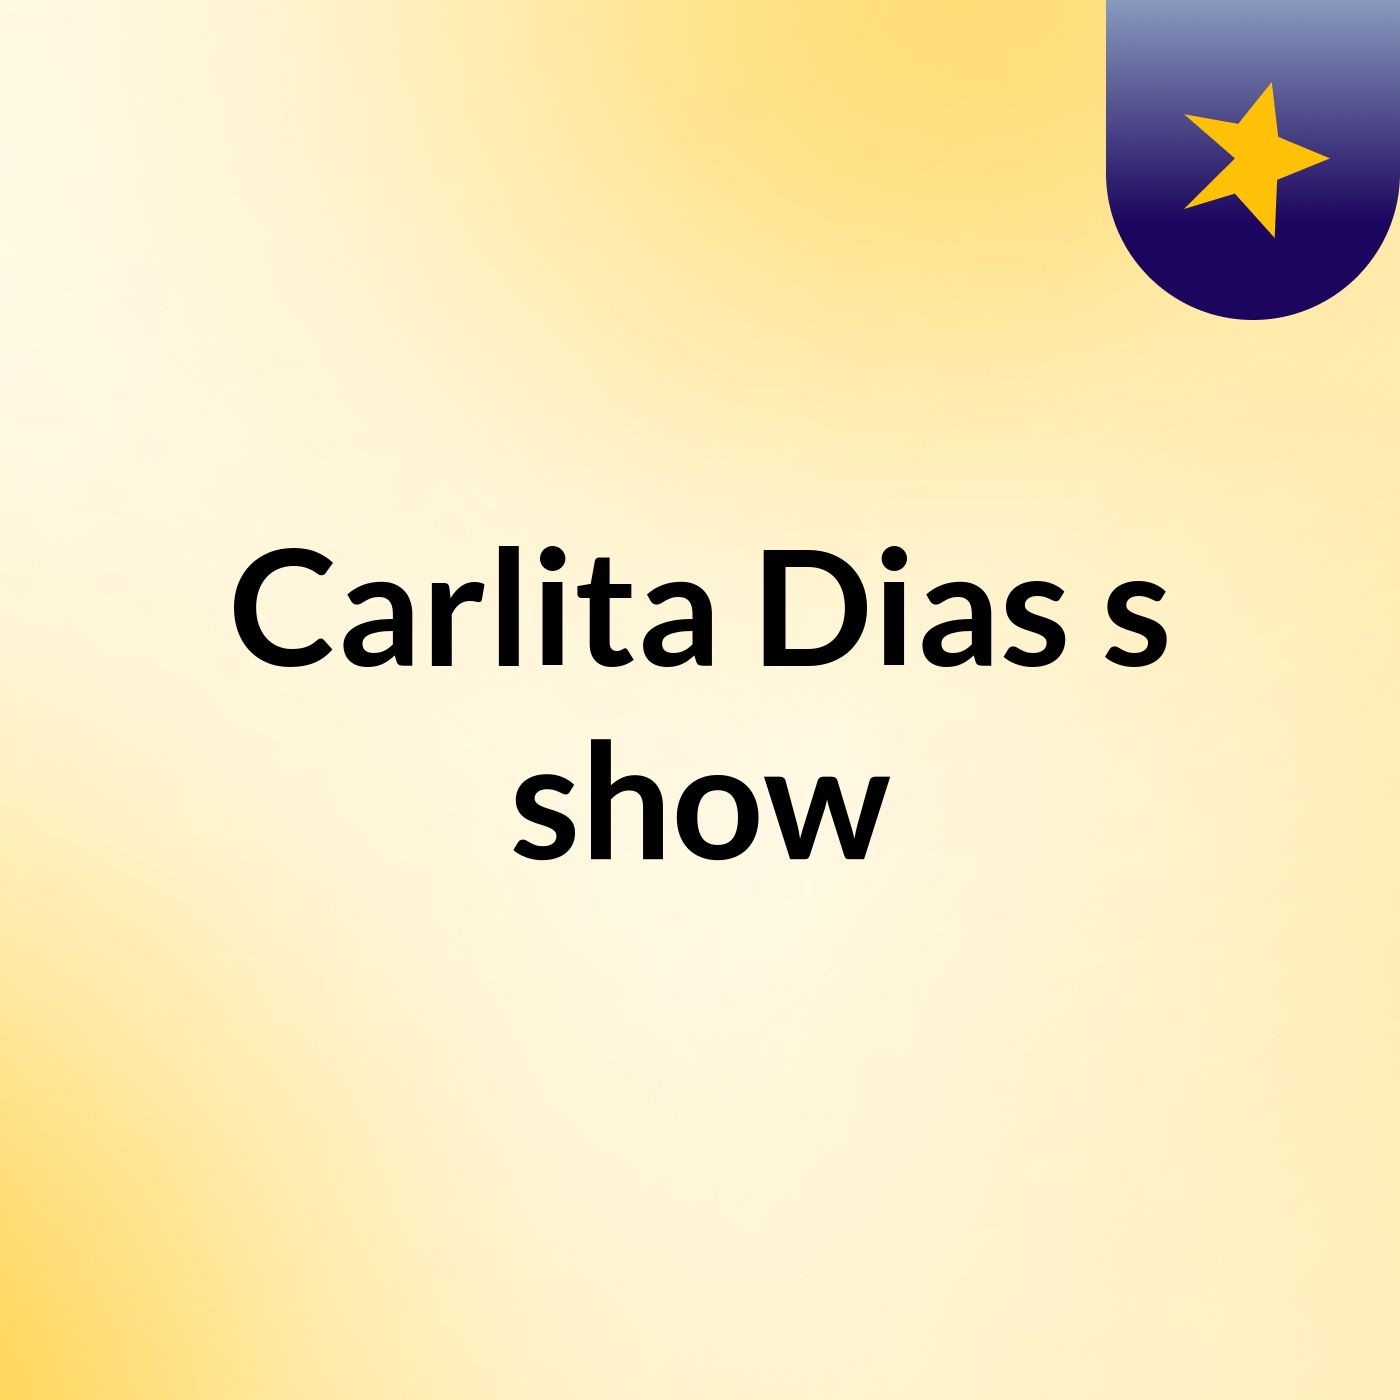 Carlita Dias's show